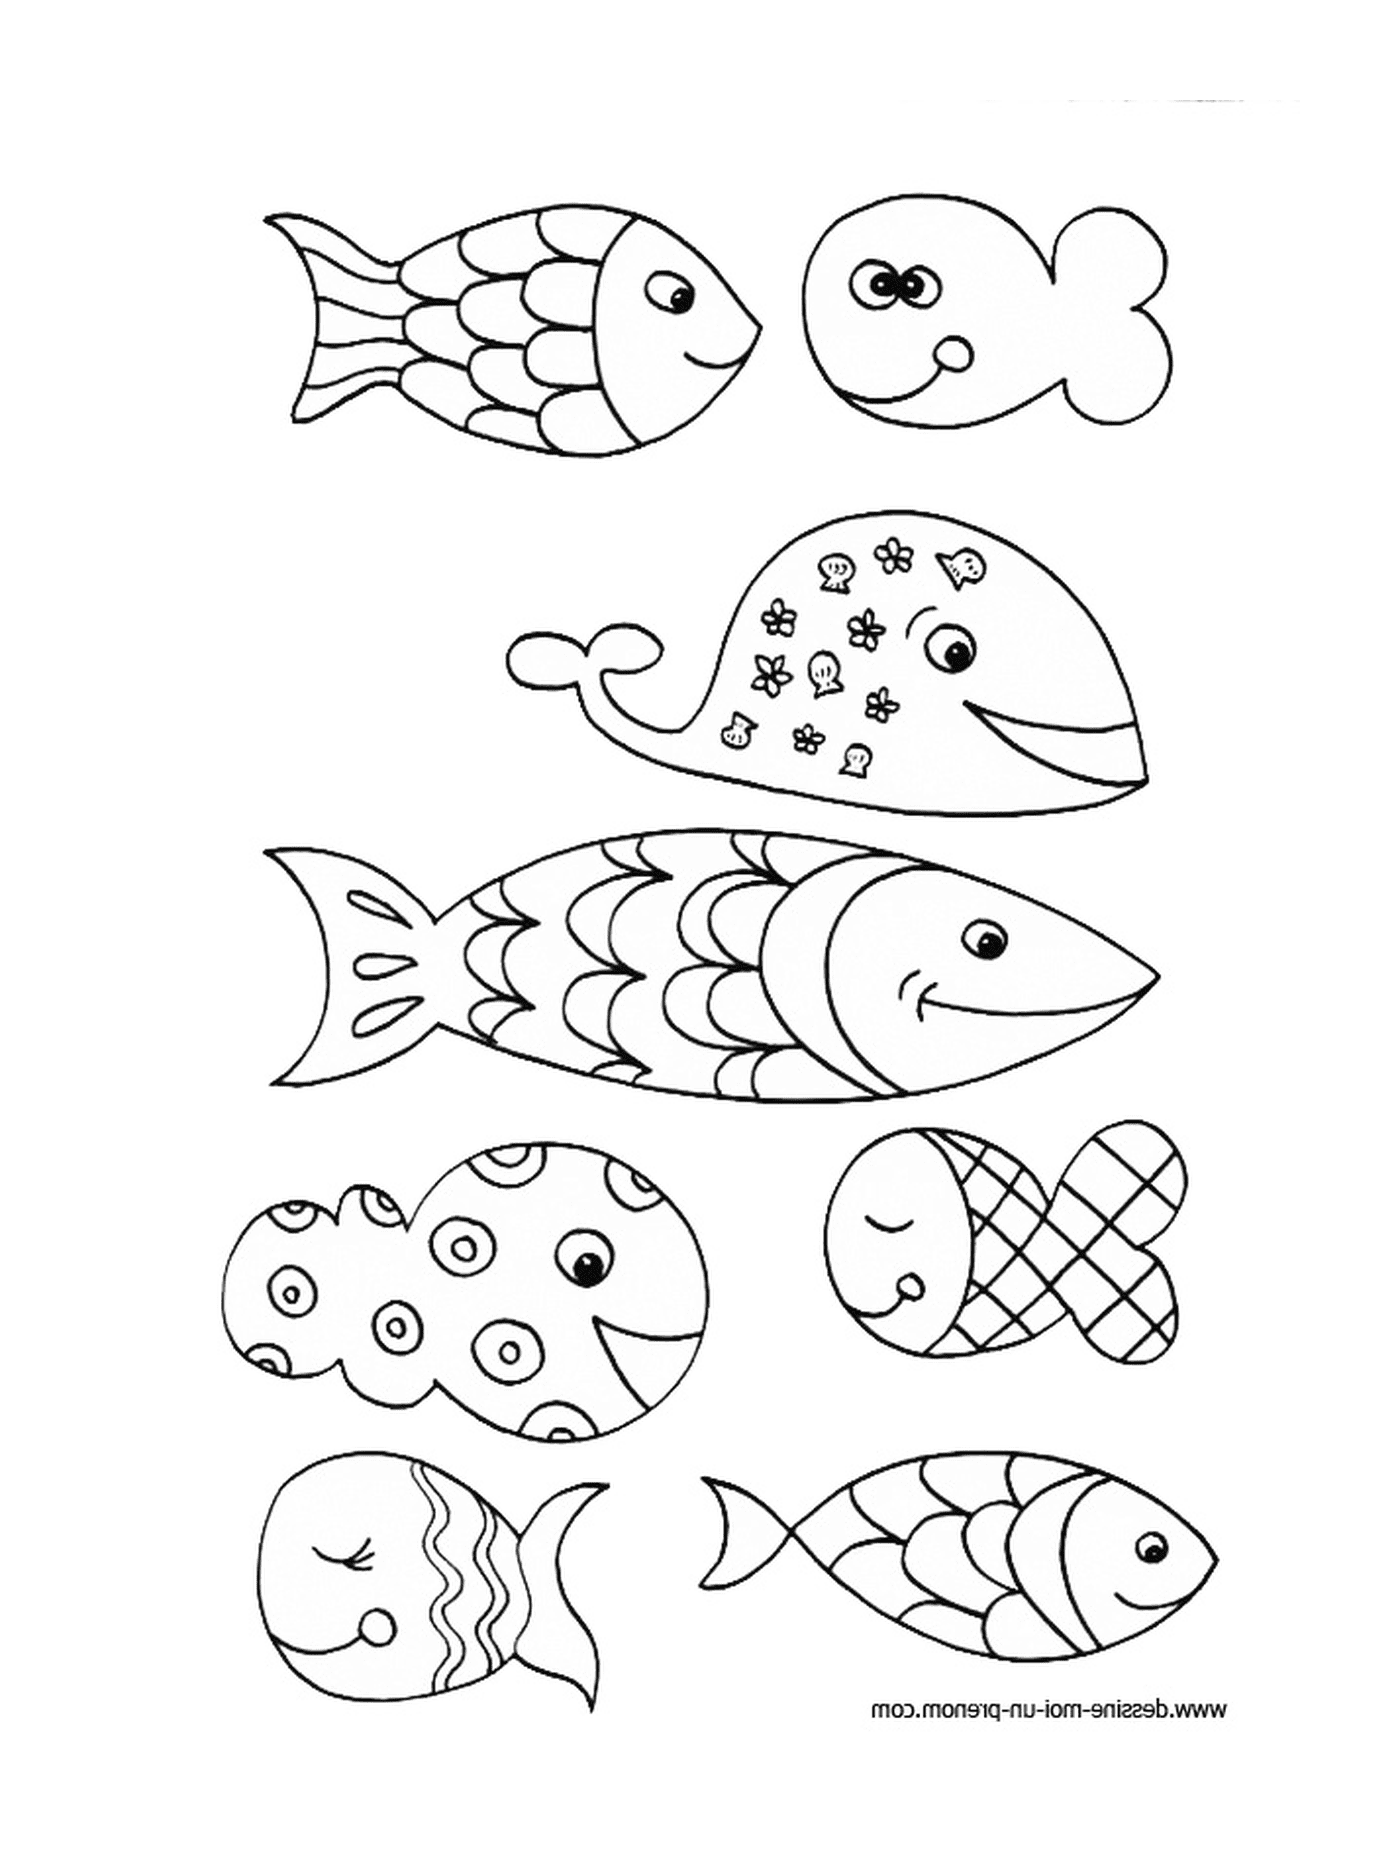  Alinhamento de vários peixes 